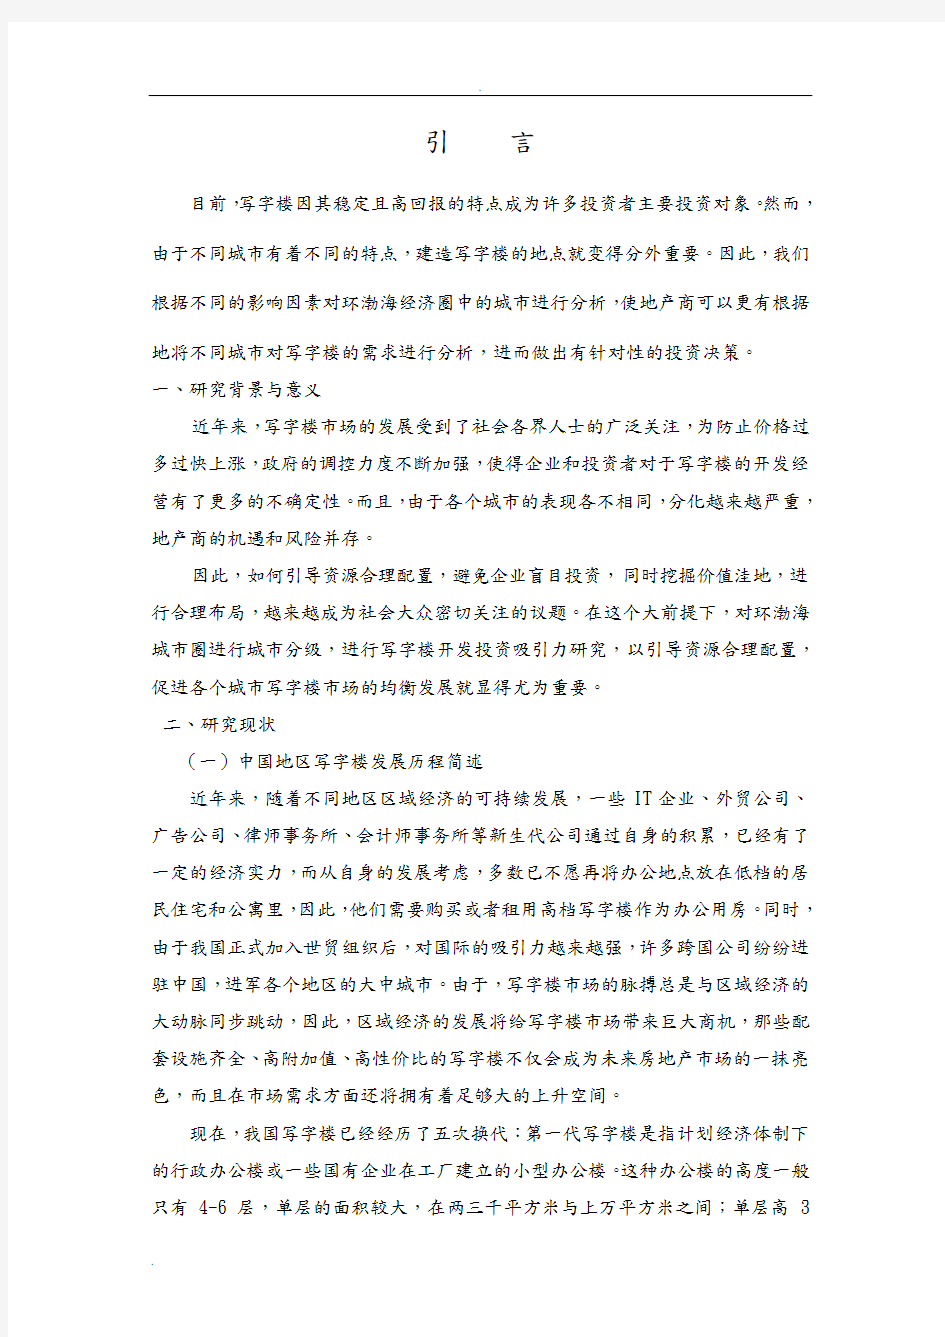 中国地区写字楼发展历程简述